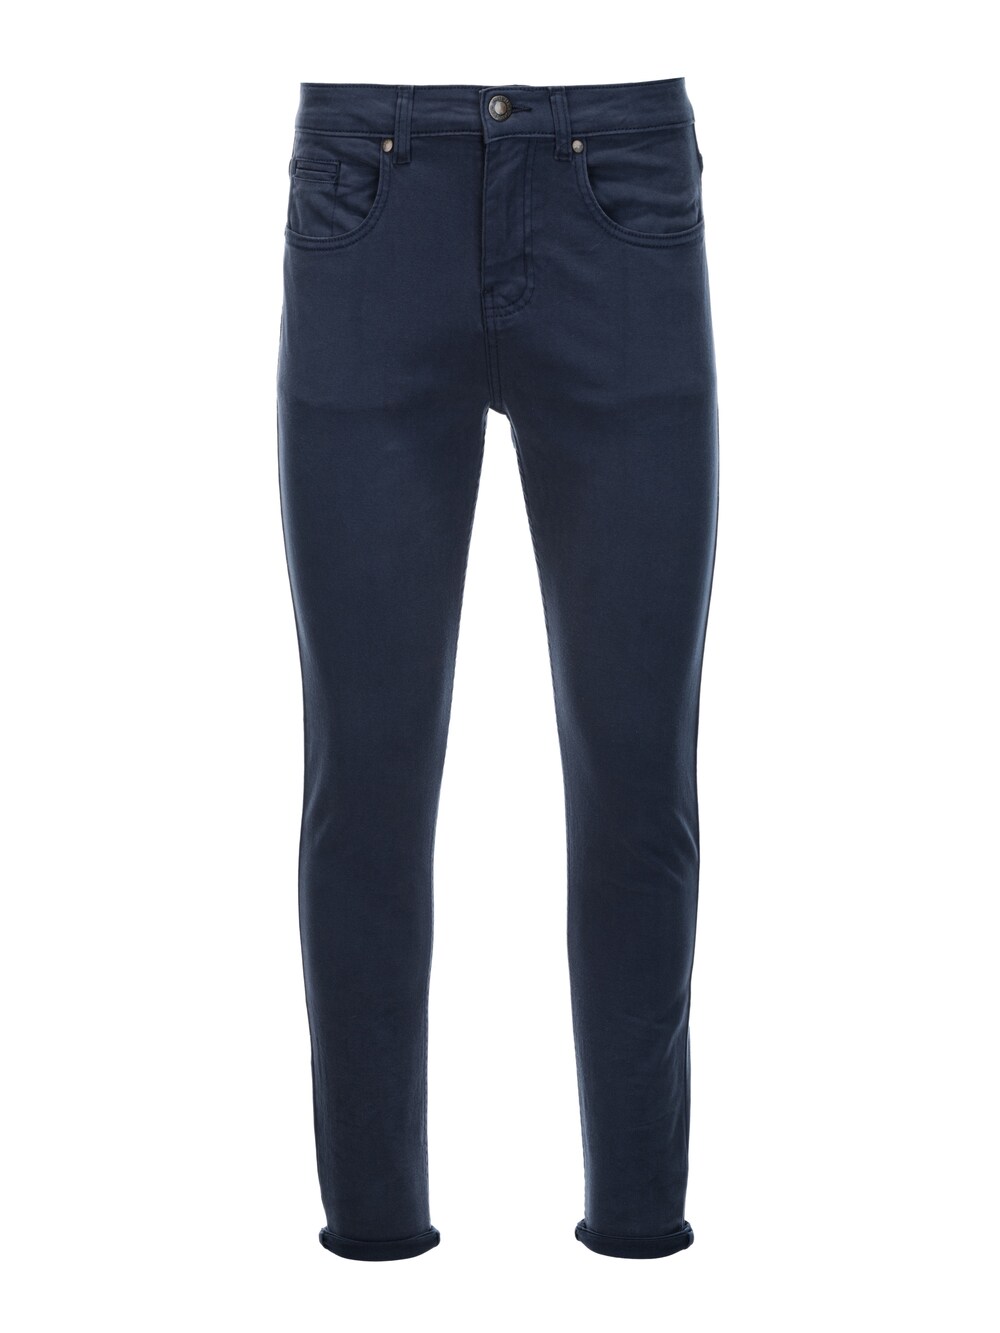 Обычные брюки чинос Ombre P1059, темно-синий брюки p1059 ombre цвет burgundy